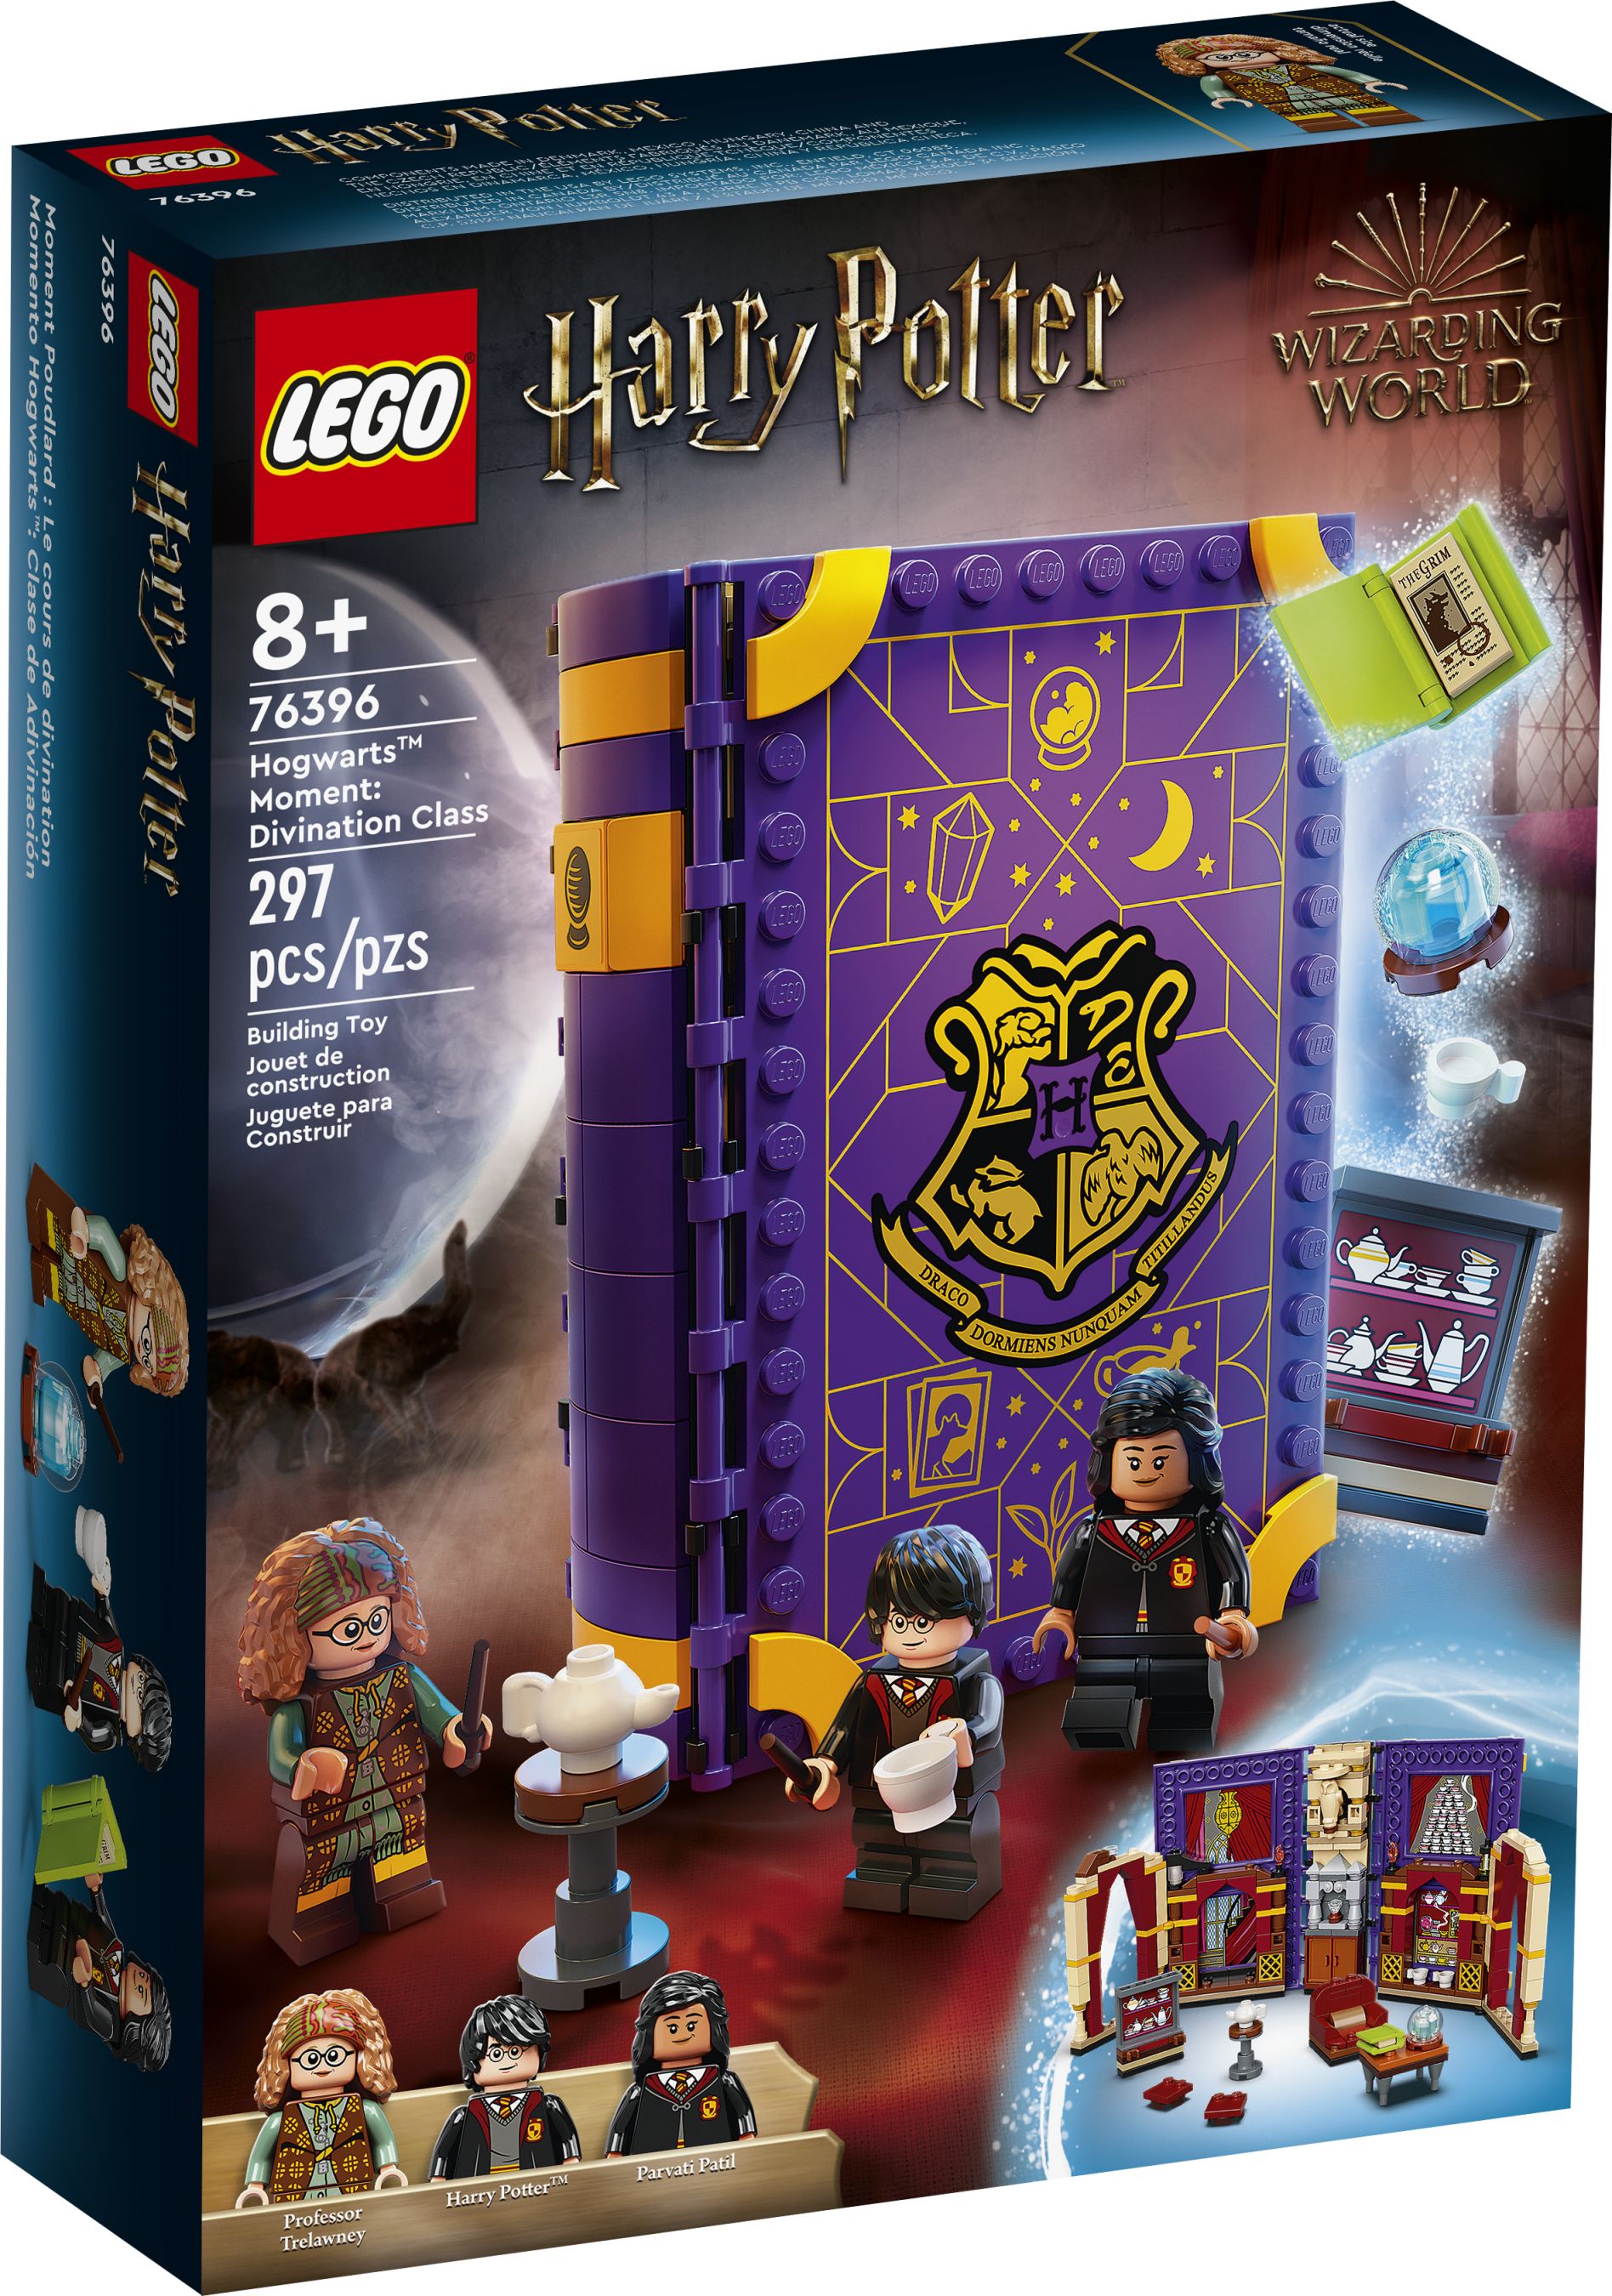 LEGO Harry Potter 76396 Hogwarts™ Moment: Wahrsageunterricht LEGO_76396_alt1.jpg